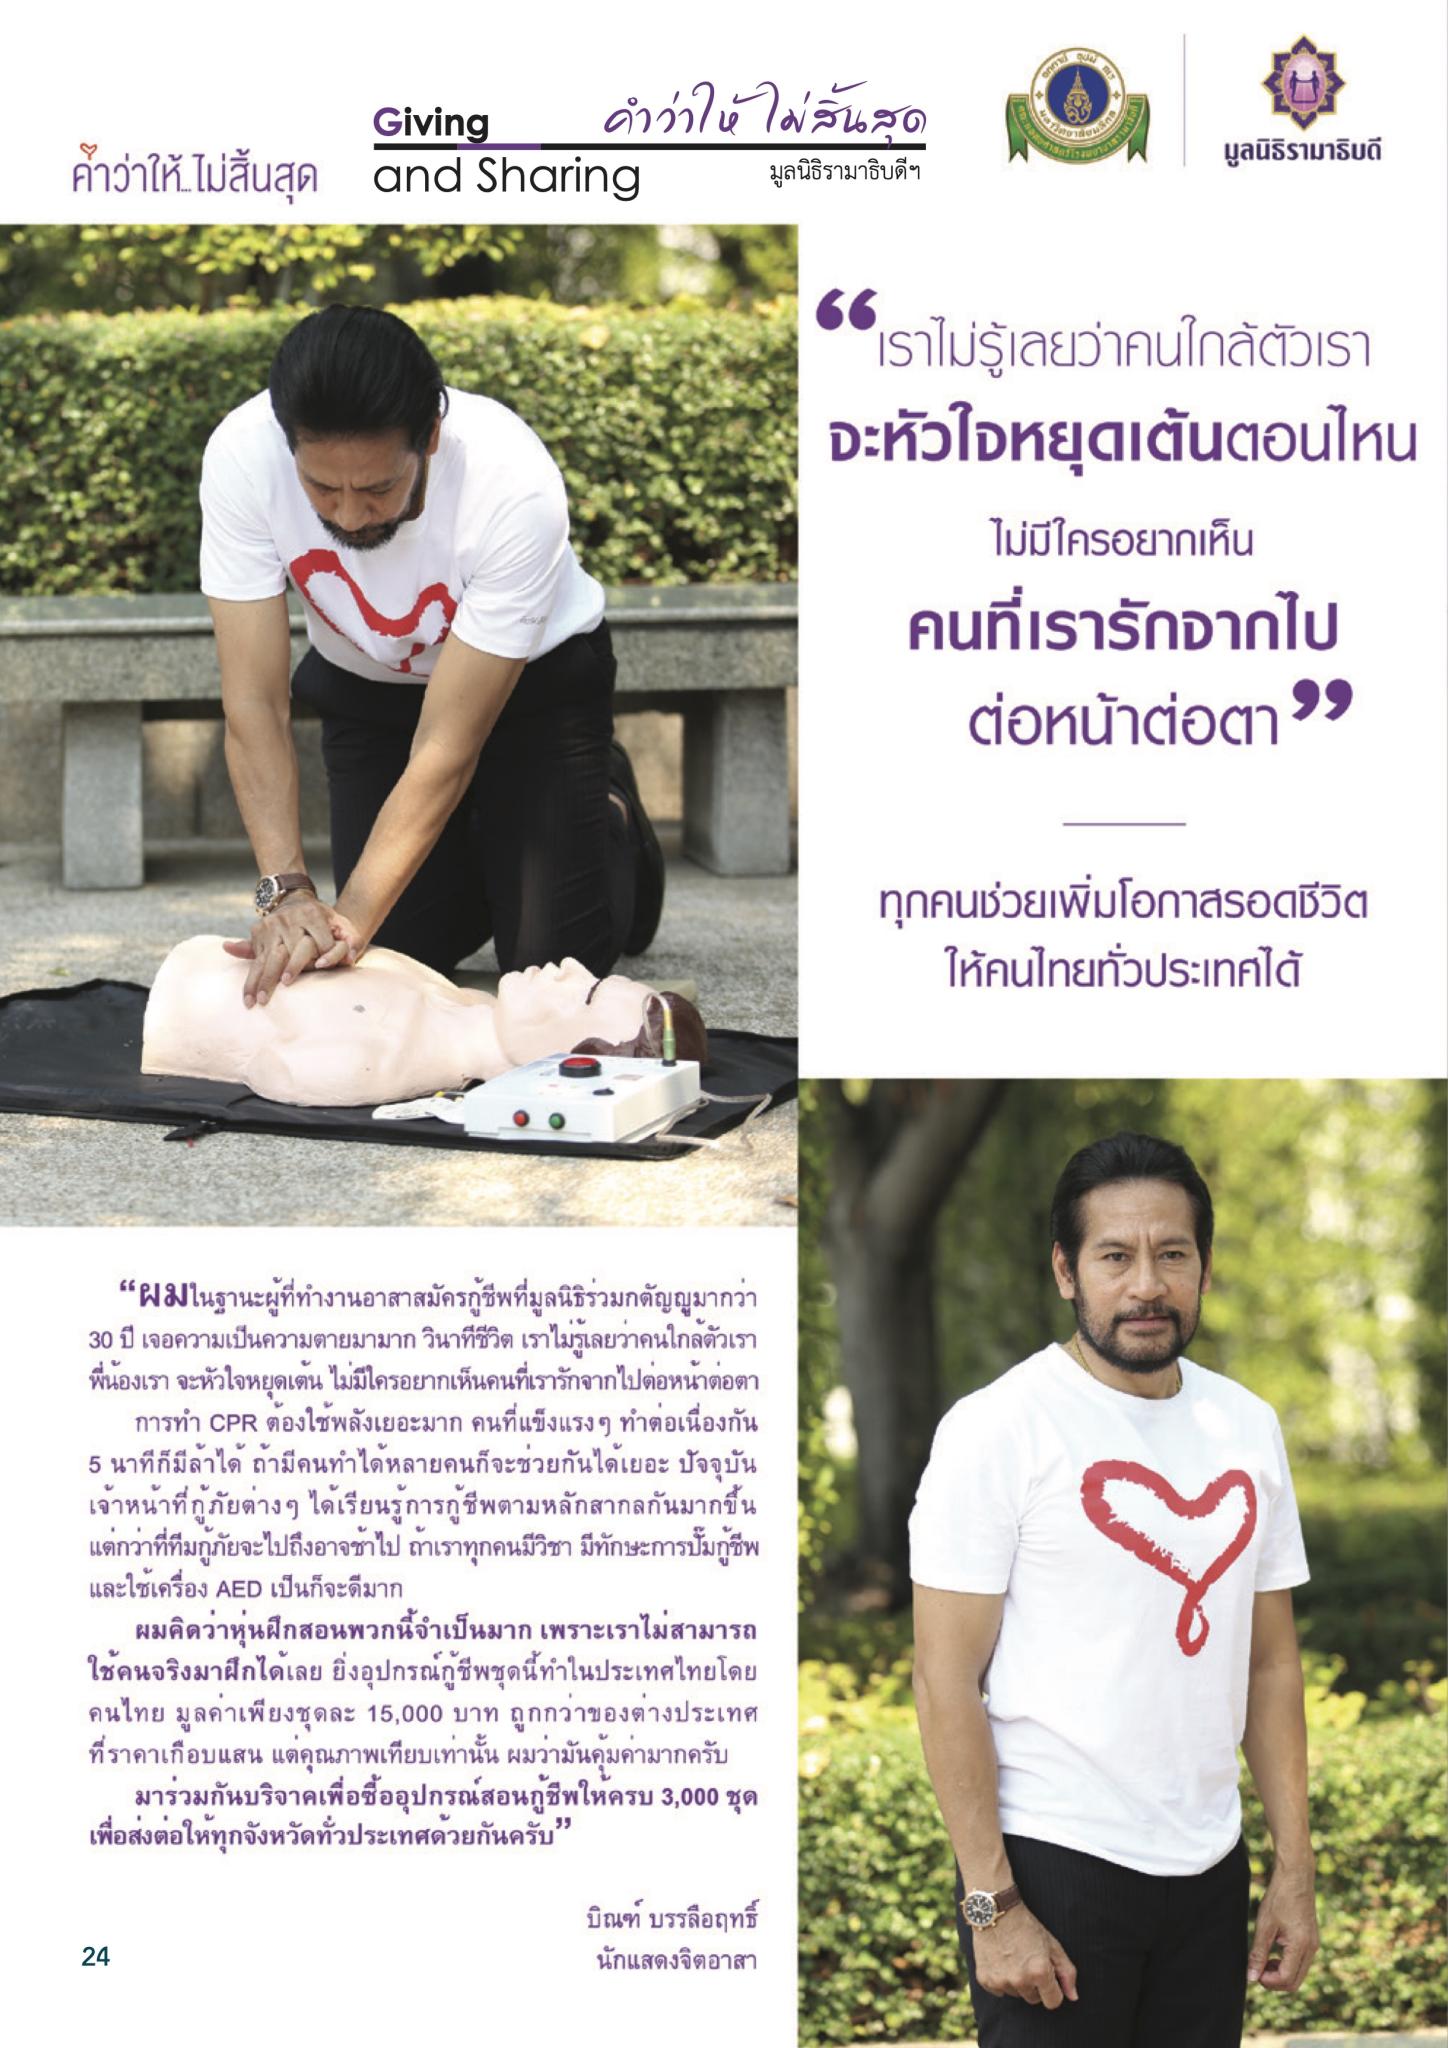 ทุกคนช่วยเพิ่มโอกาสรอดชีวิตให้คนไทยทั่วประเทศได้